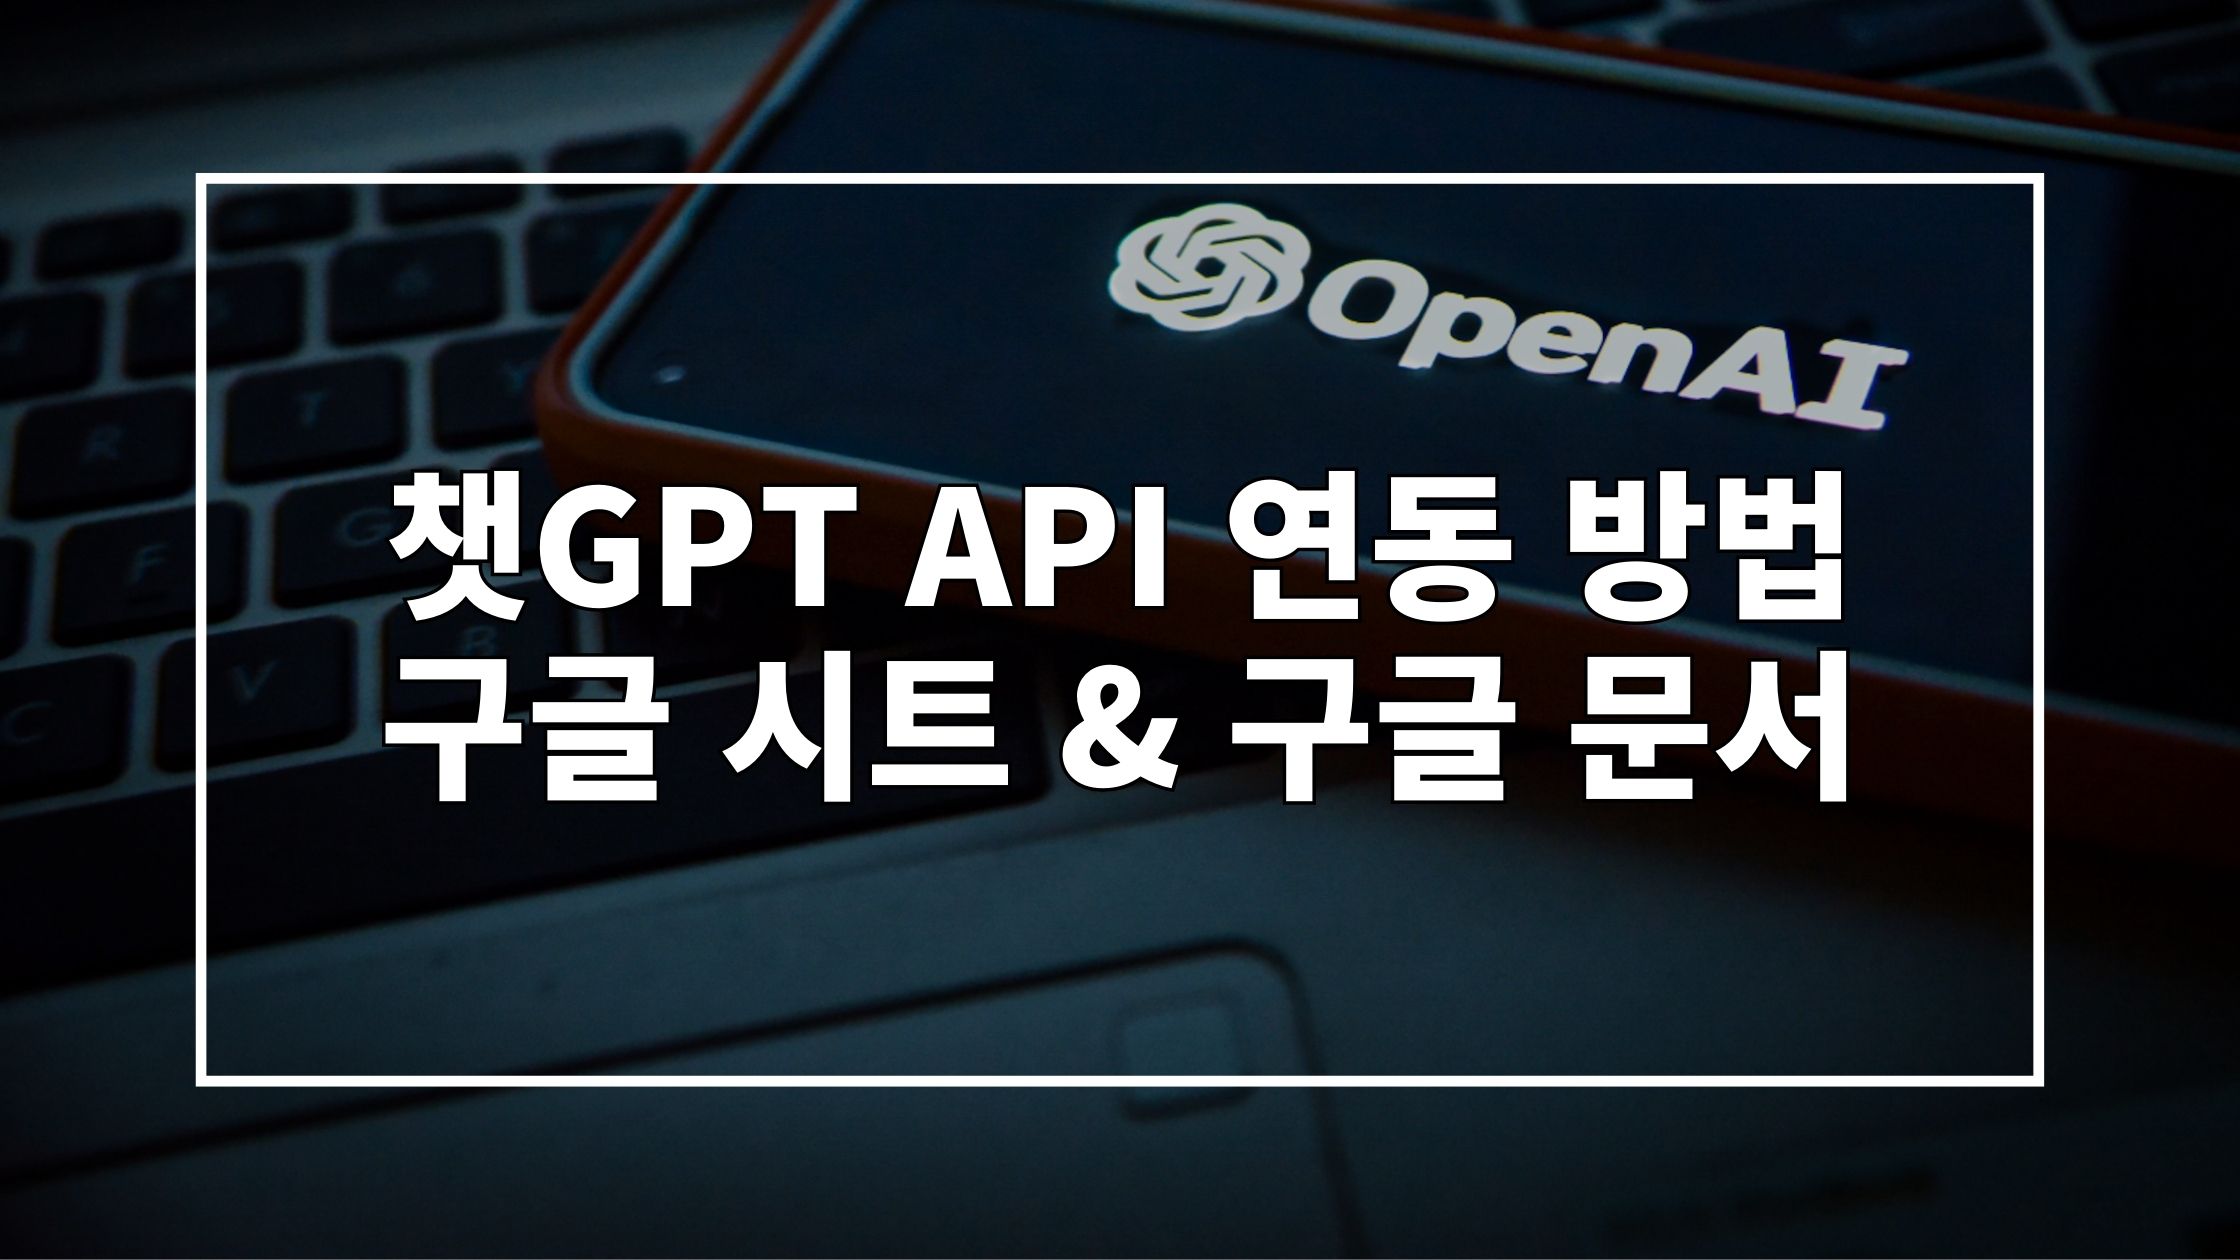 OpenAI 로고가 띄워진 스마트폰이 놓인 사진 위에 "챗GPT API 연동 방법 구글 시트 & 구글 문서"라고 쓰여있는 썸네일 이미지입니다.